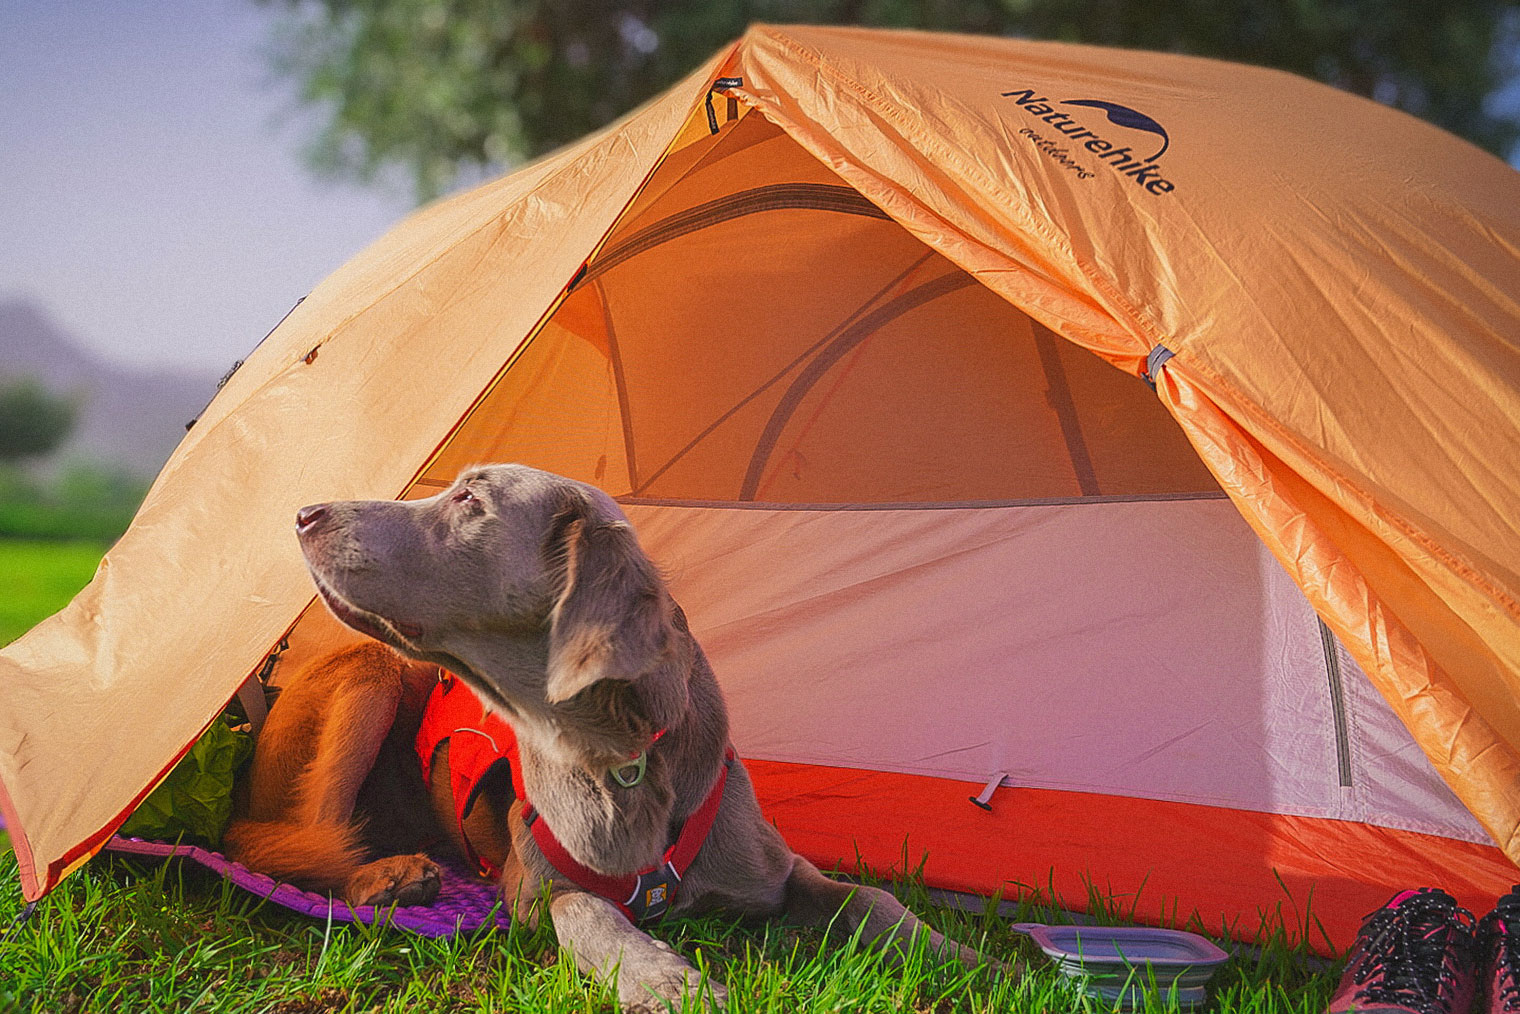 Если собака ночует в тамбуре, безопаснее пристегнуть ее на поводок. Поэтому место для палатки лучше искать рядом с деревом